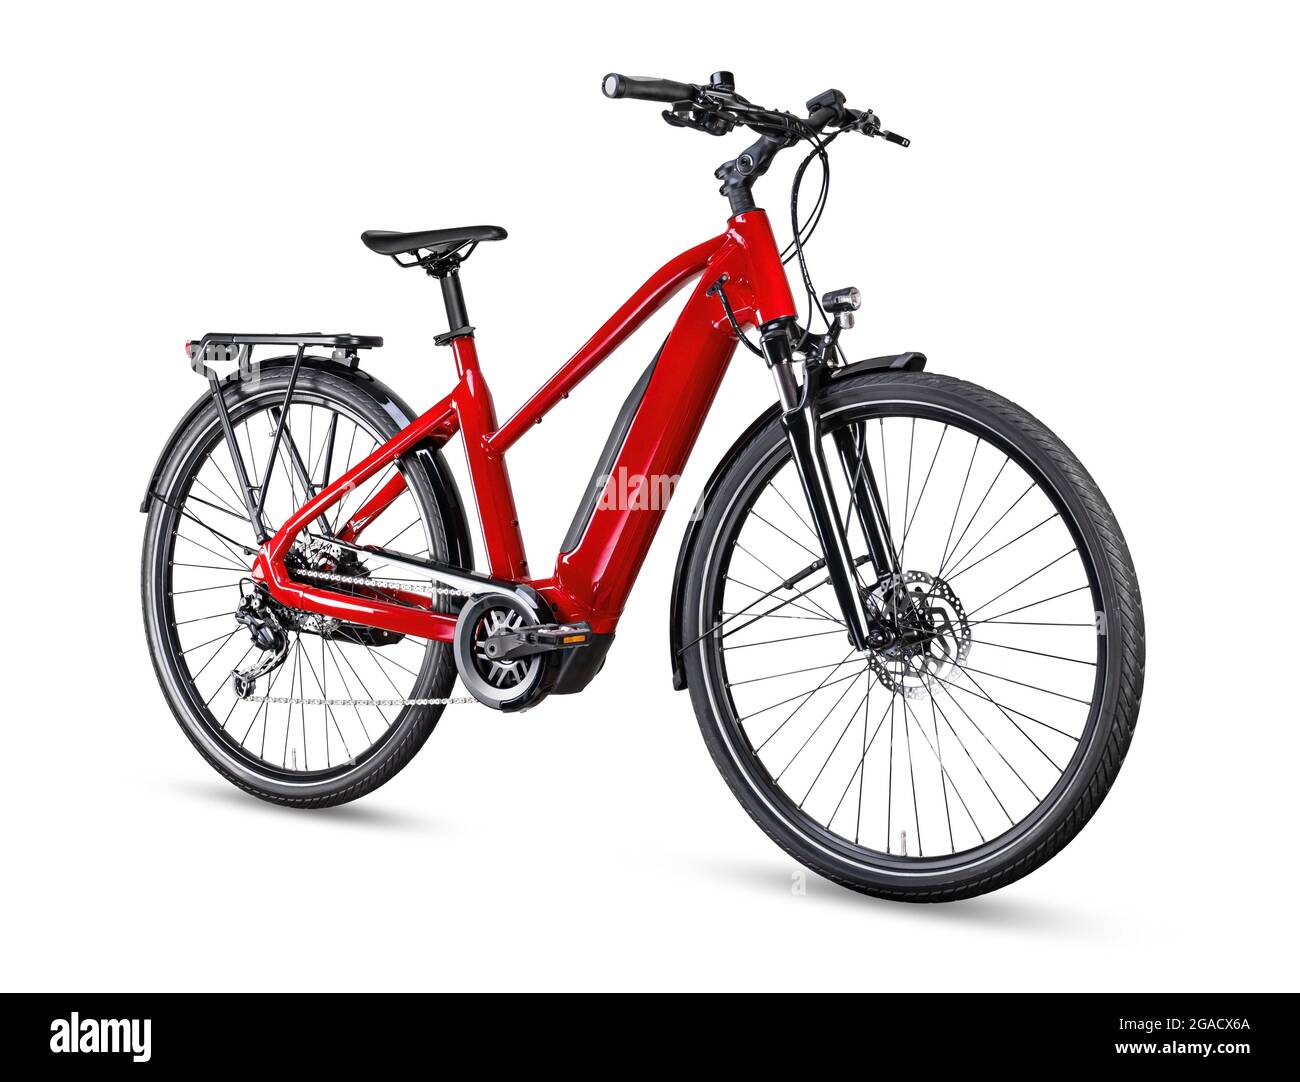 Rotes, modernes mittelgetriebenes E-Bike-Pedelec für Städtetouren oder Trekking mit E-Bikes und Mittelhalterung für Elektromotoren. Batteriebetriebenes E-Bike isoliert auf weißem Hintergrund Stockfoto